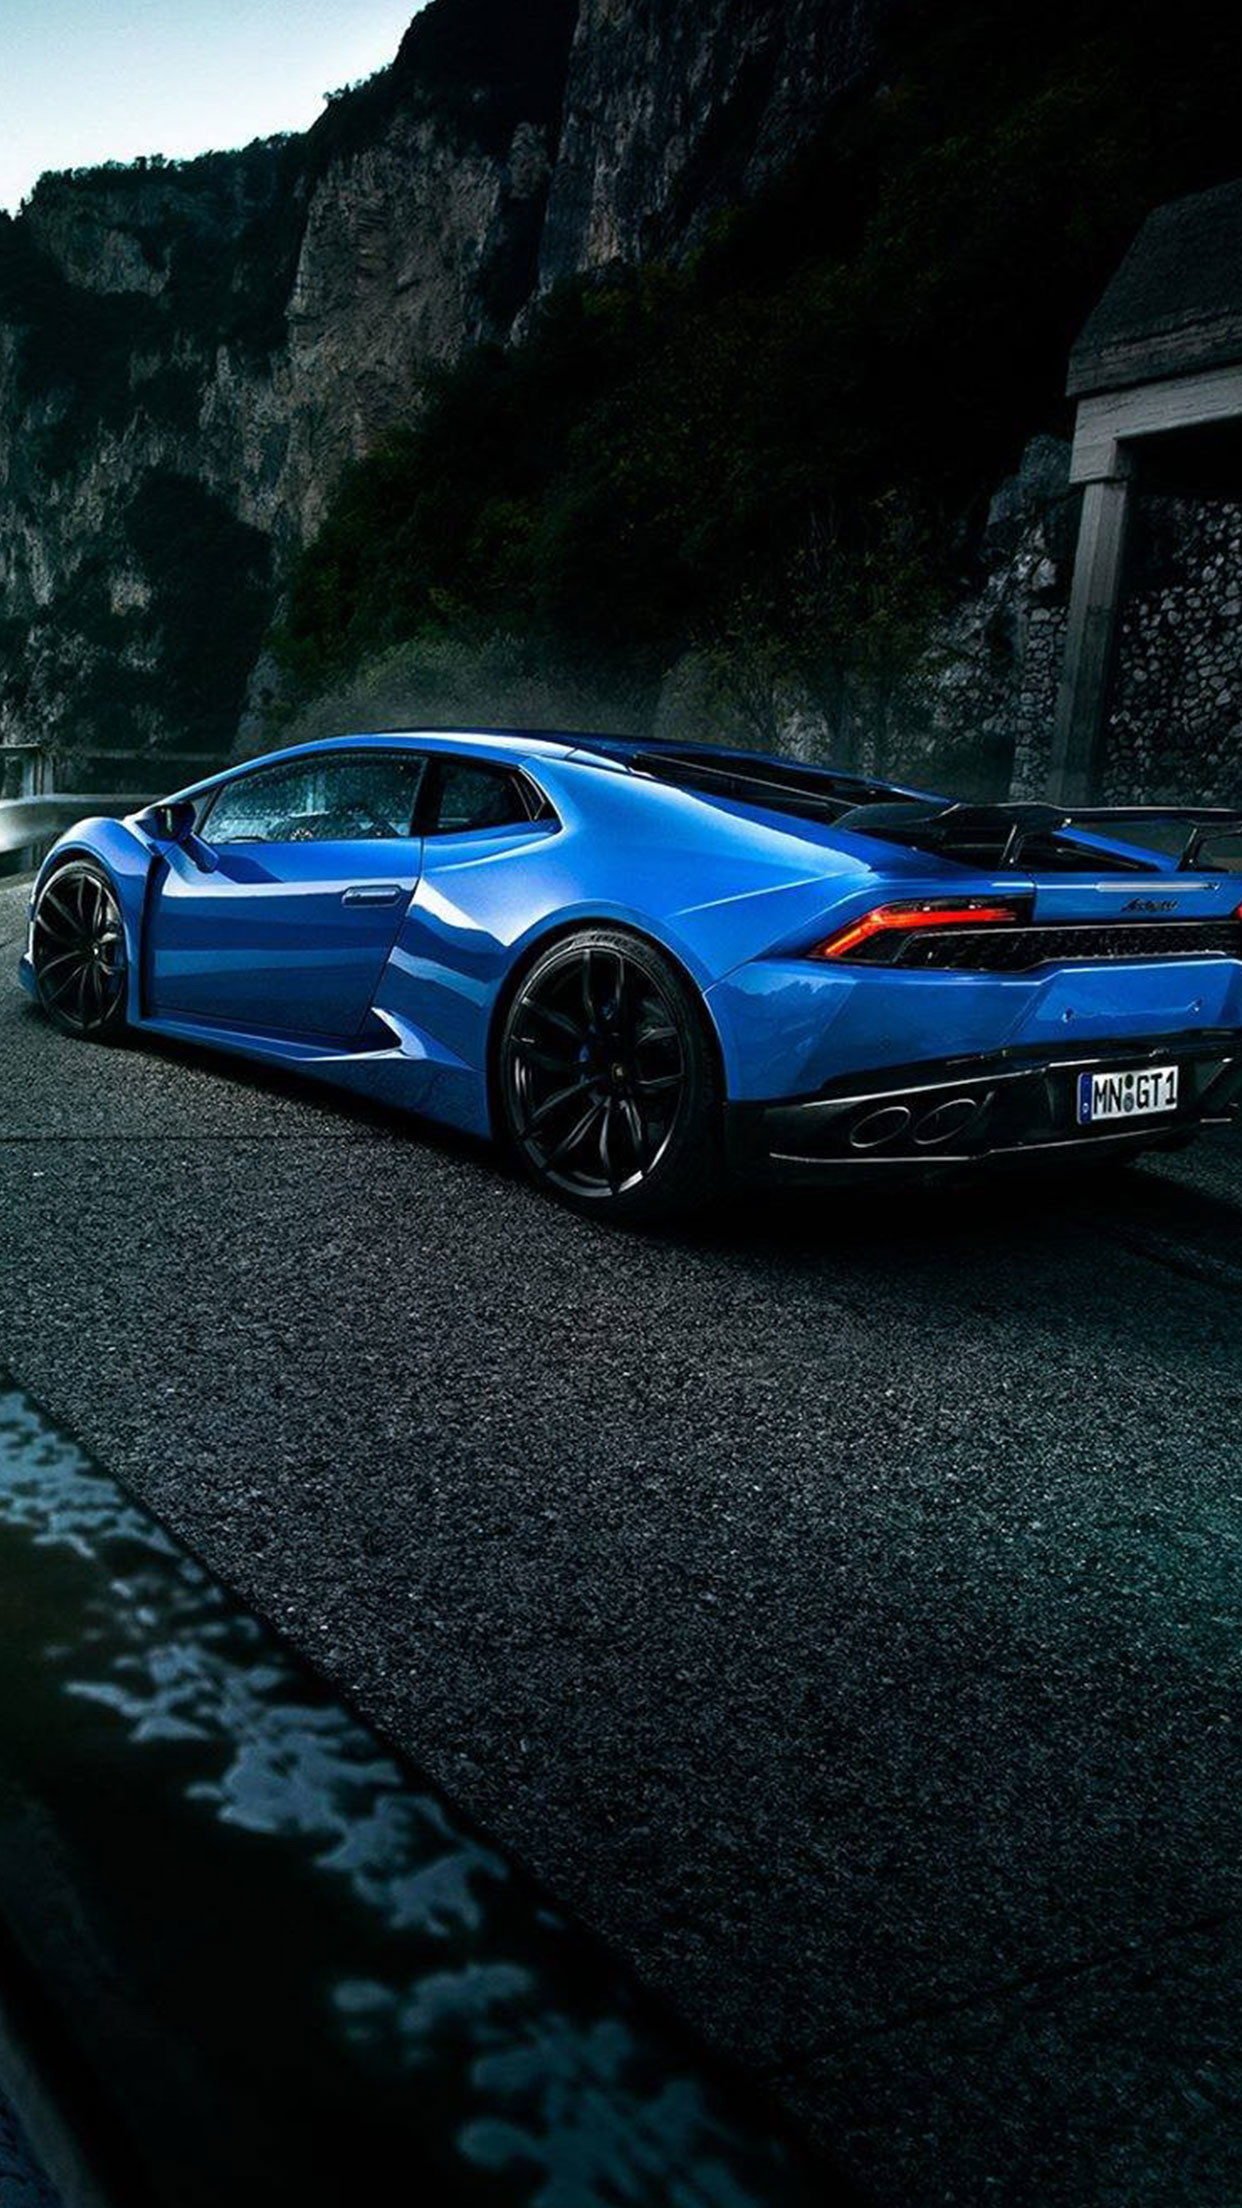 1242x2208 Blue Lamborghini car wallpaper #Iphone #android #blue #lamborghini #car # wallpaper